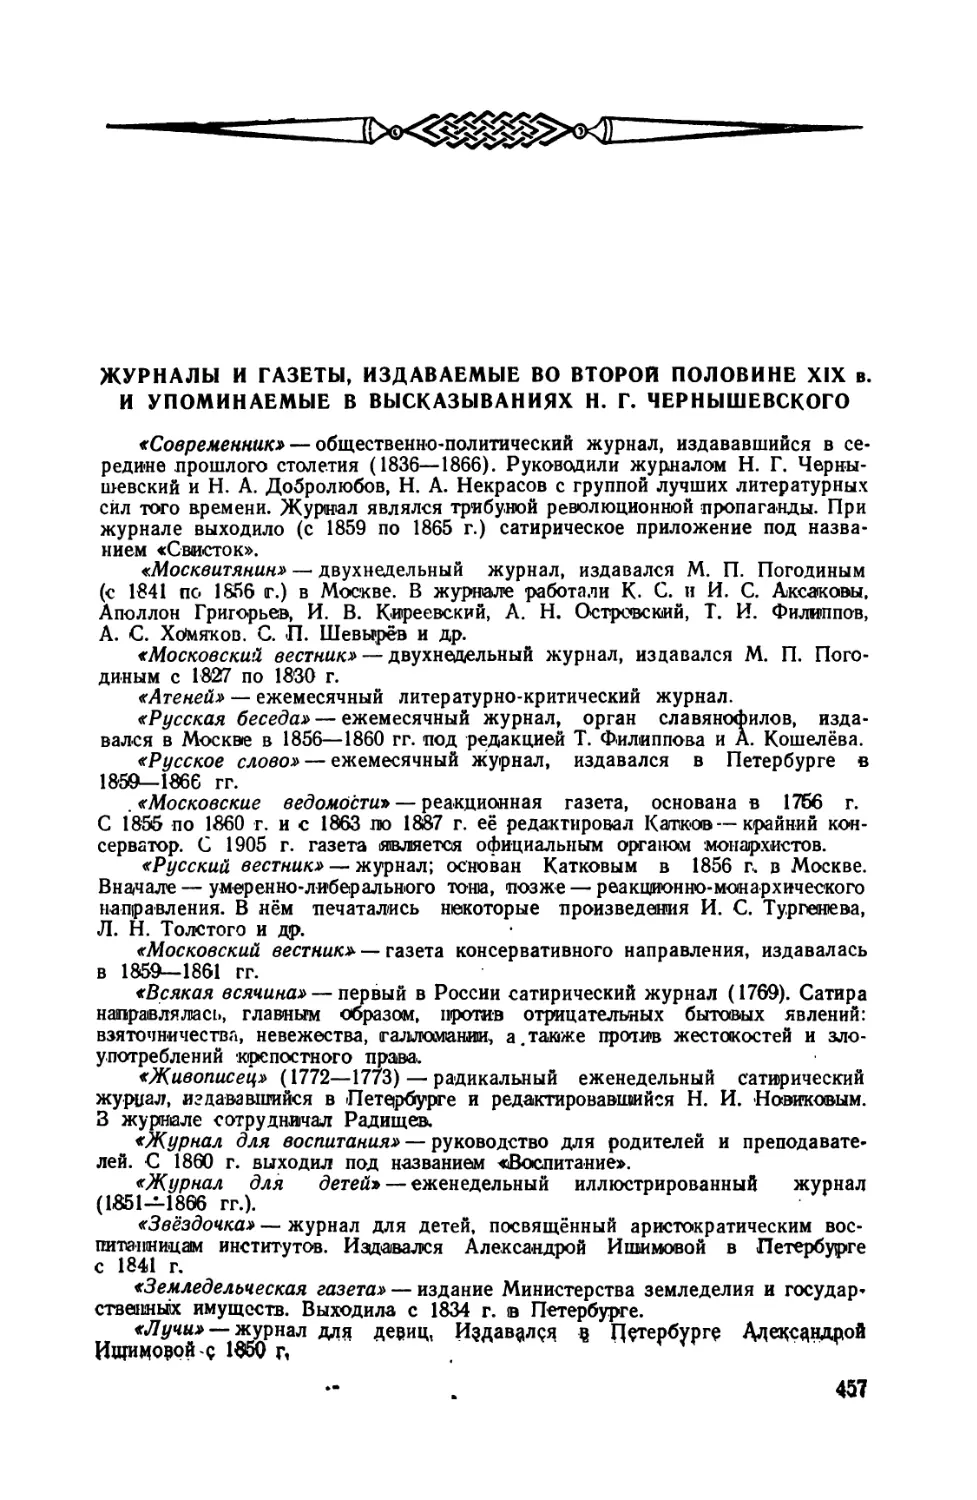 Журналы  и  газеты,  издаваемые  во  второй  половине  XIX  века  и  упоминаемые  в  высказываниях  Н.Г. Чернышевского